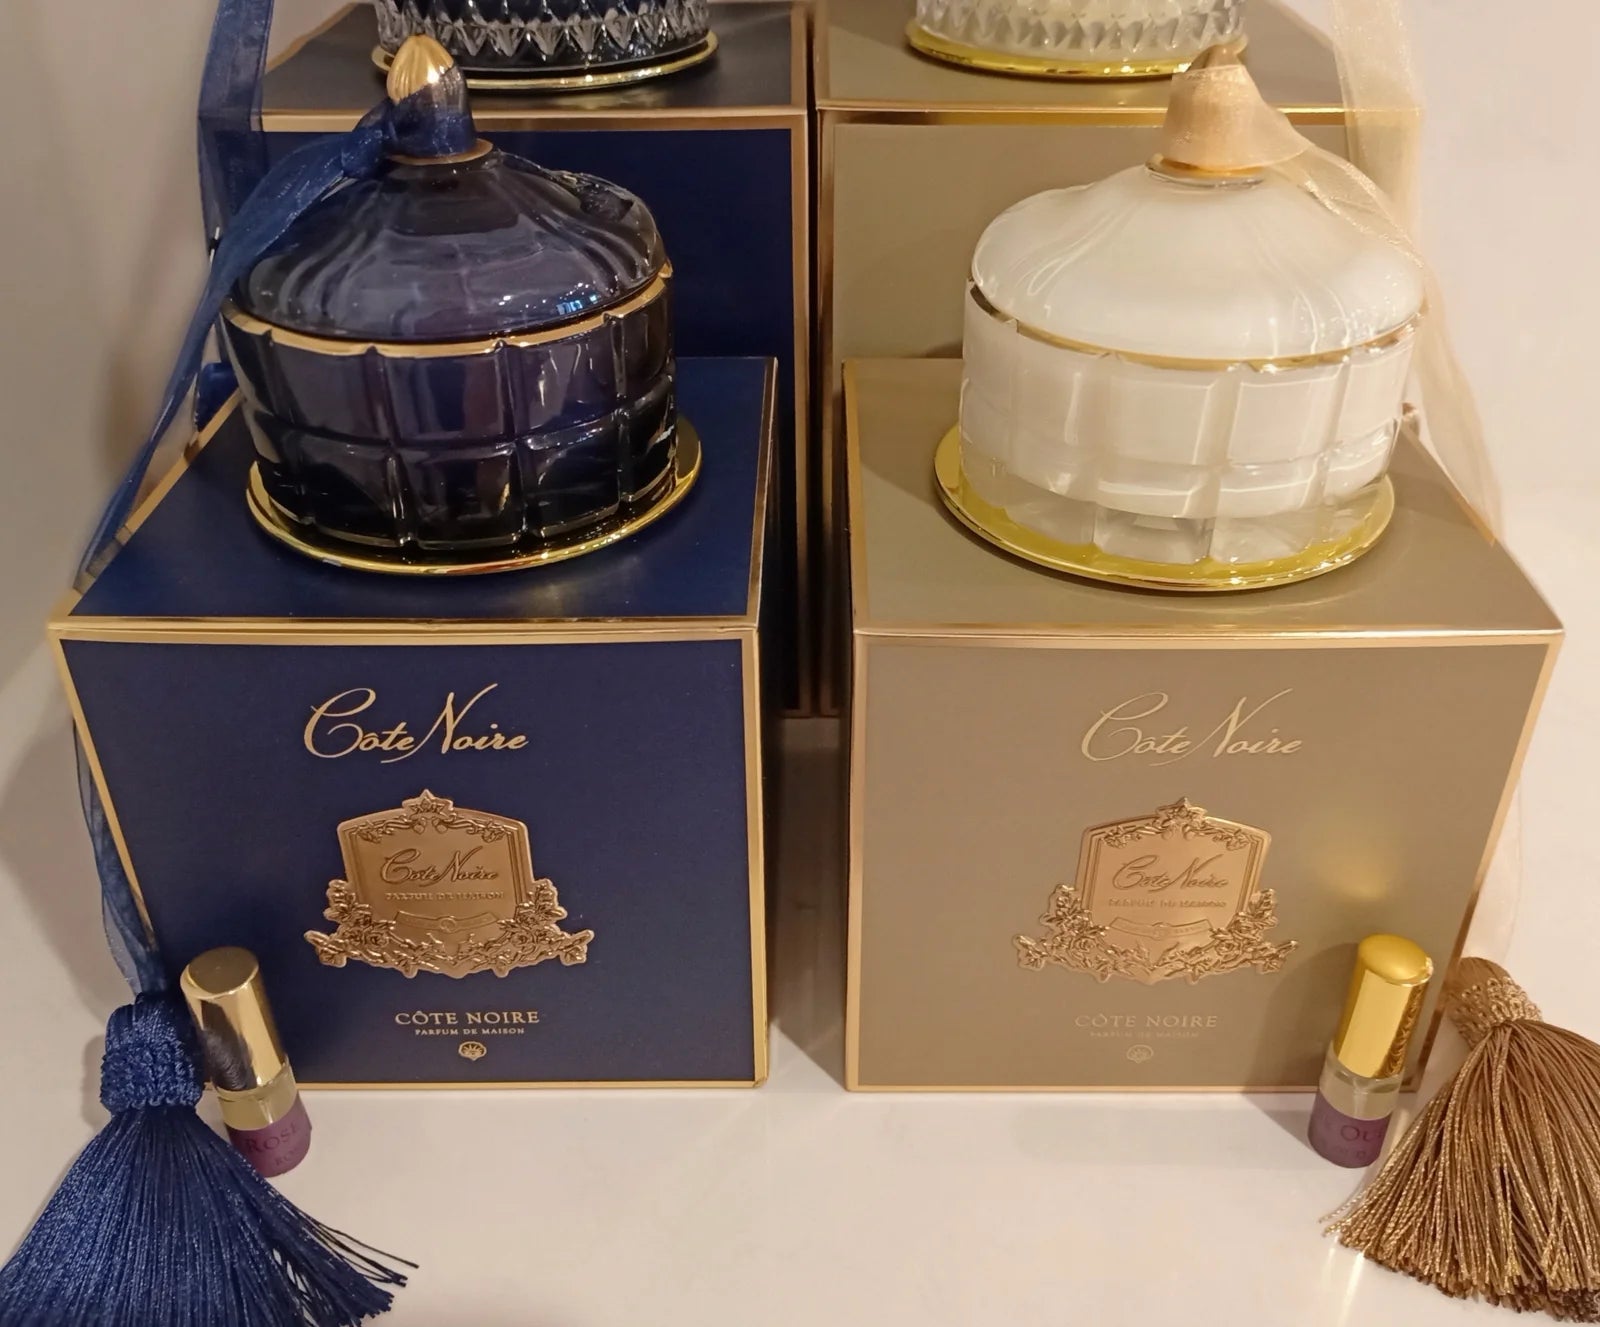 kerzenset blondevanilla und kerzenset eau de vie auf blauen und cremefarbenen geschenkboxen.